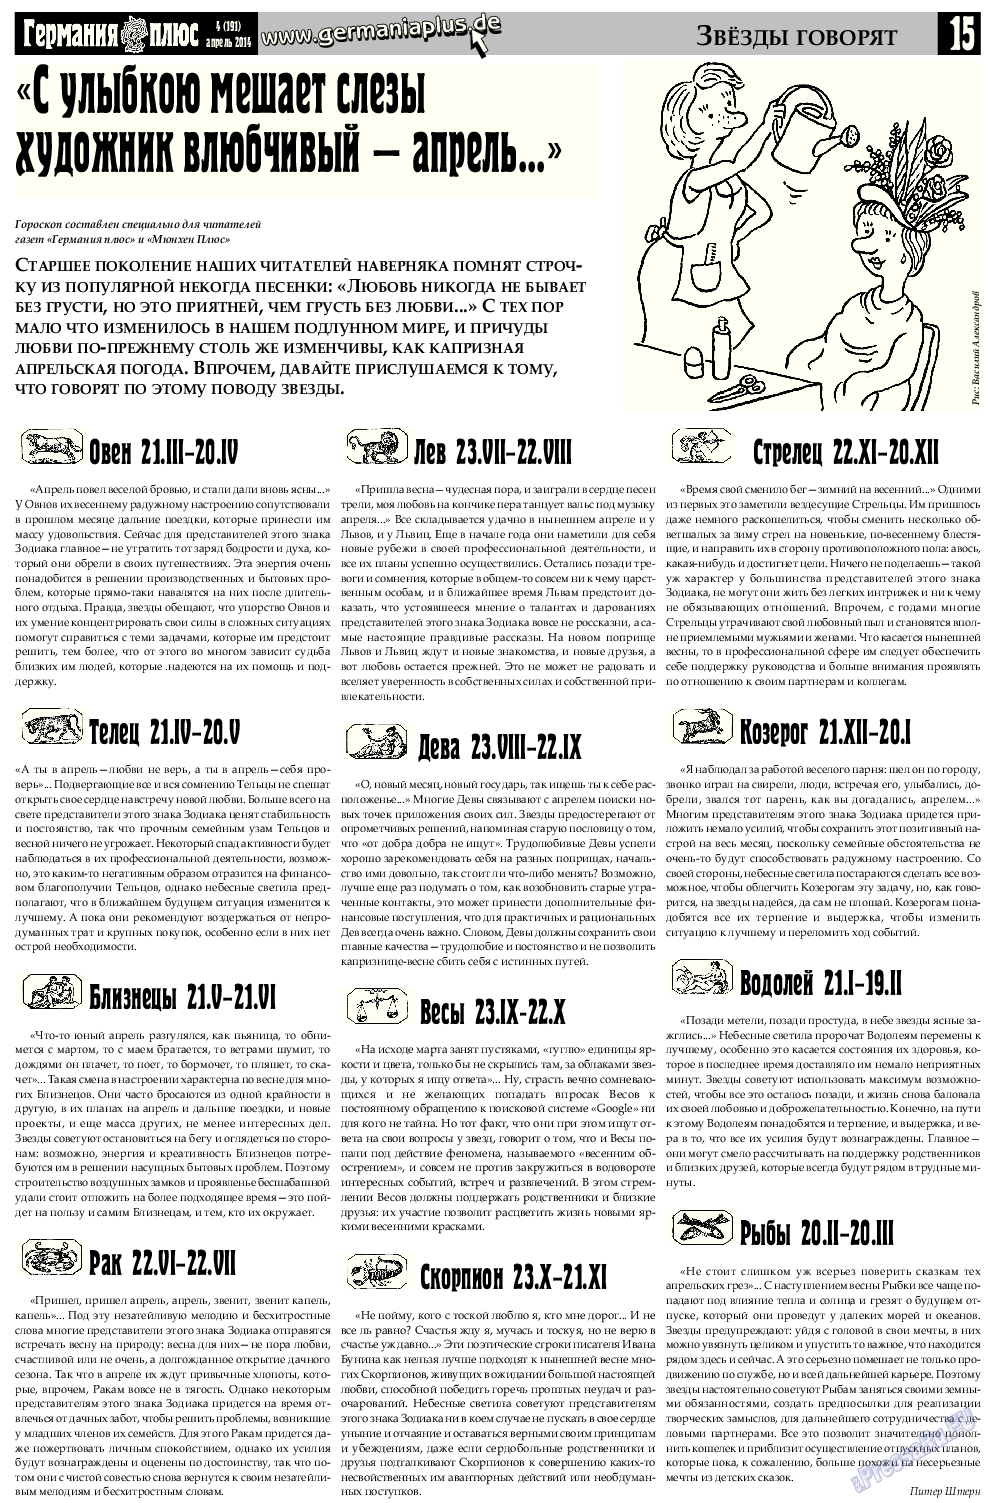 Германия плюс, газета. 2014 №4 стр.15